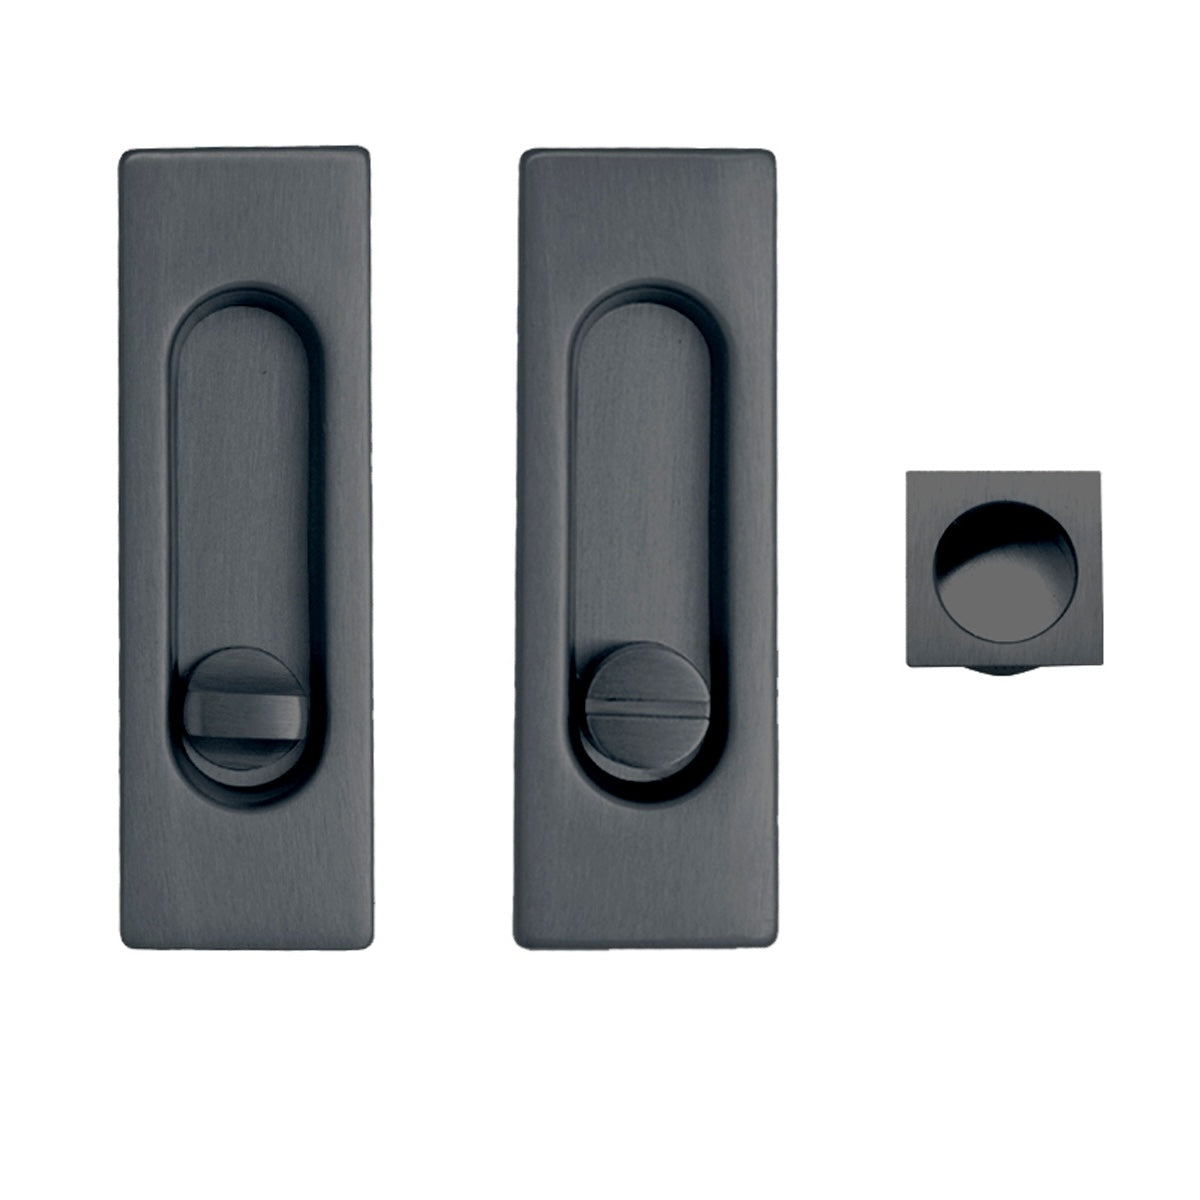 Kit uñero 75400 rectangular con condena y picaporte de 16mm en grafito para puerta corredera